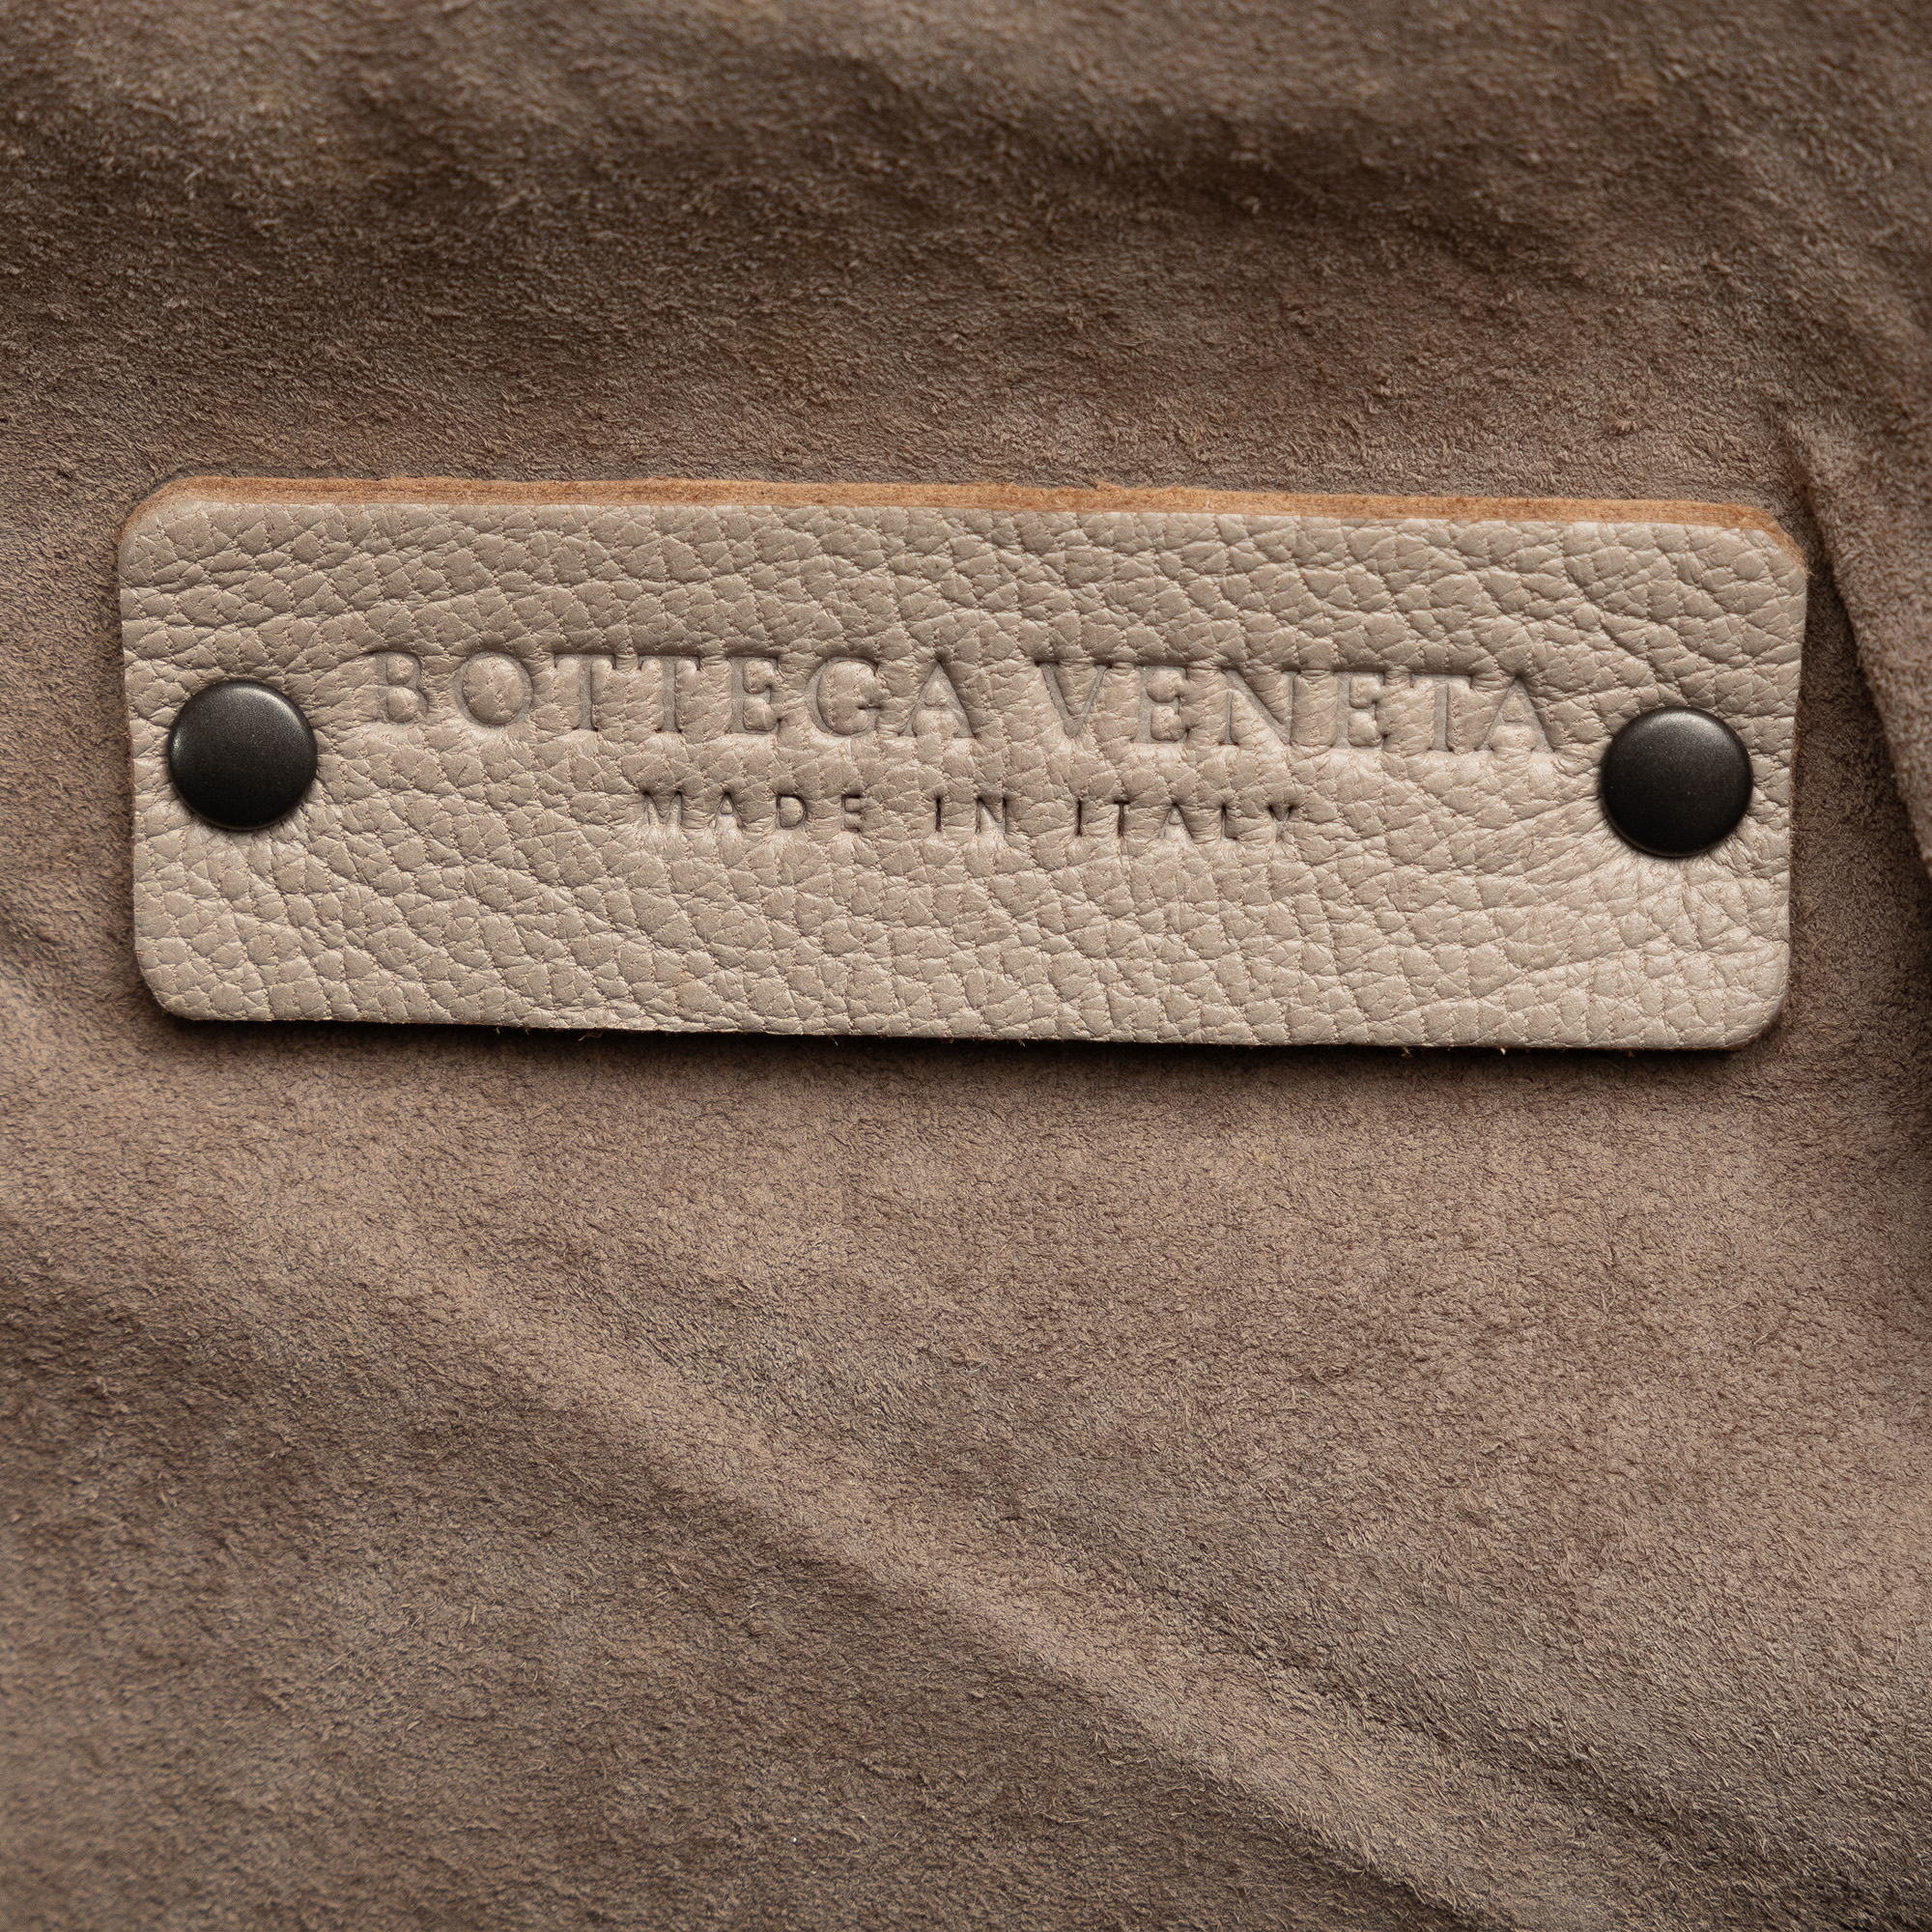 Bottega Veneta Intrecciato Handbag - Image 6 of 10